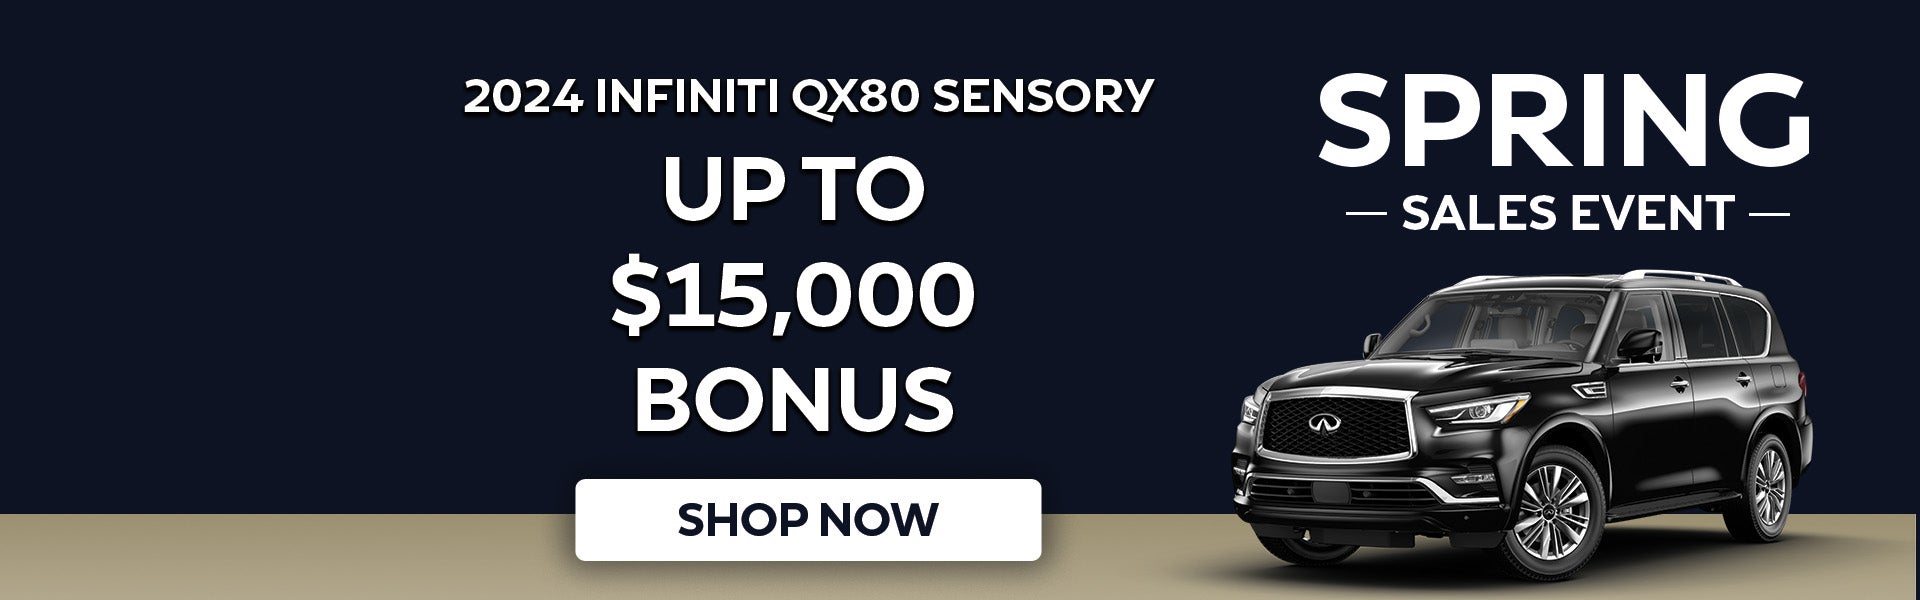 2024 INFINITI QX80 Sensory Bonus Special Offer